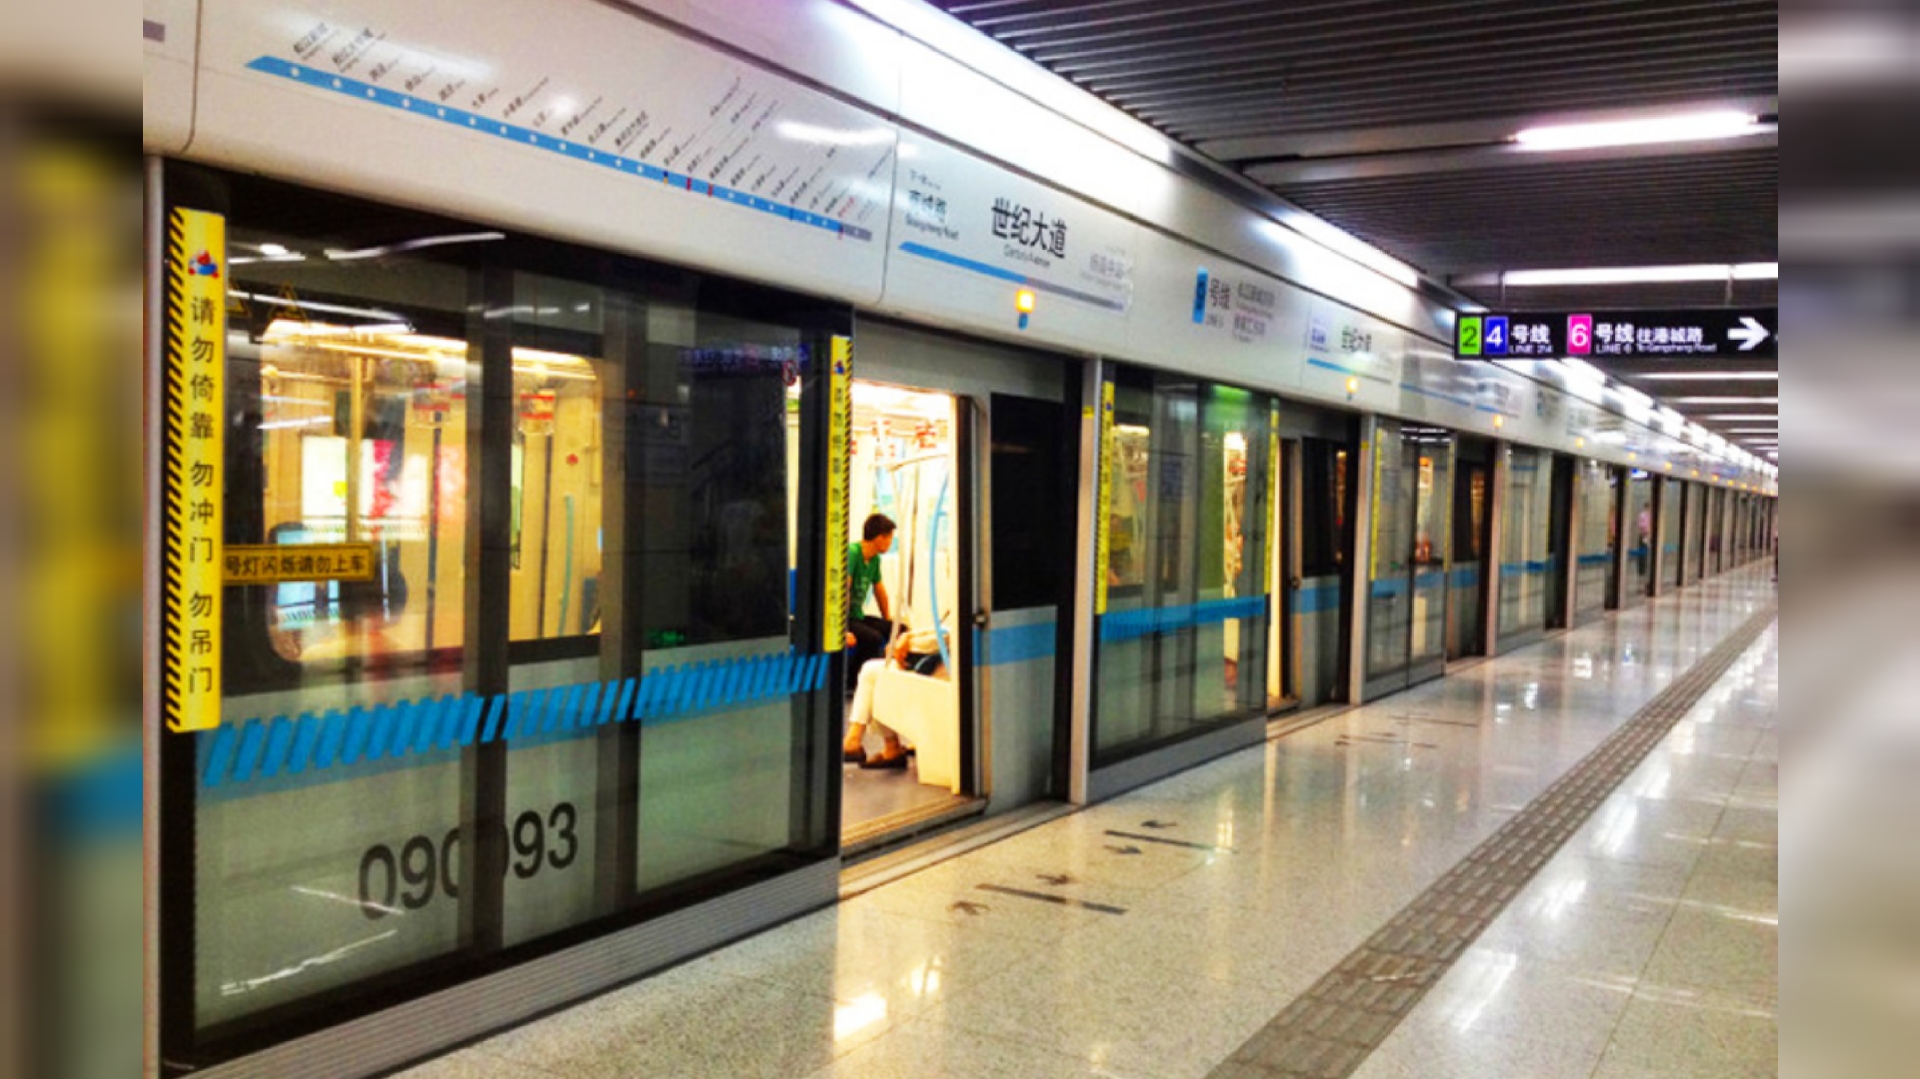 زیبایی های منحصر به فرد ایستگاه های مترو در چین